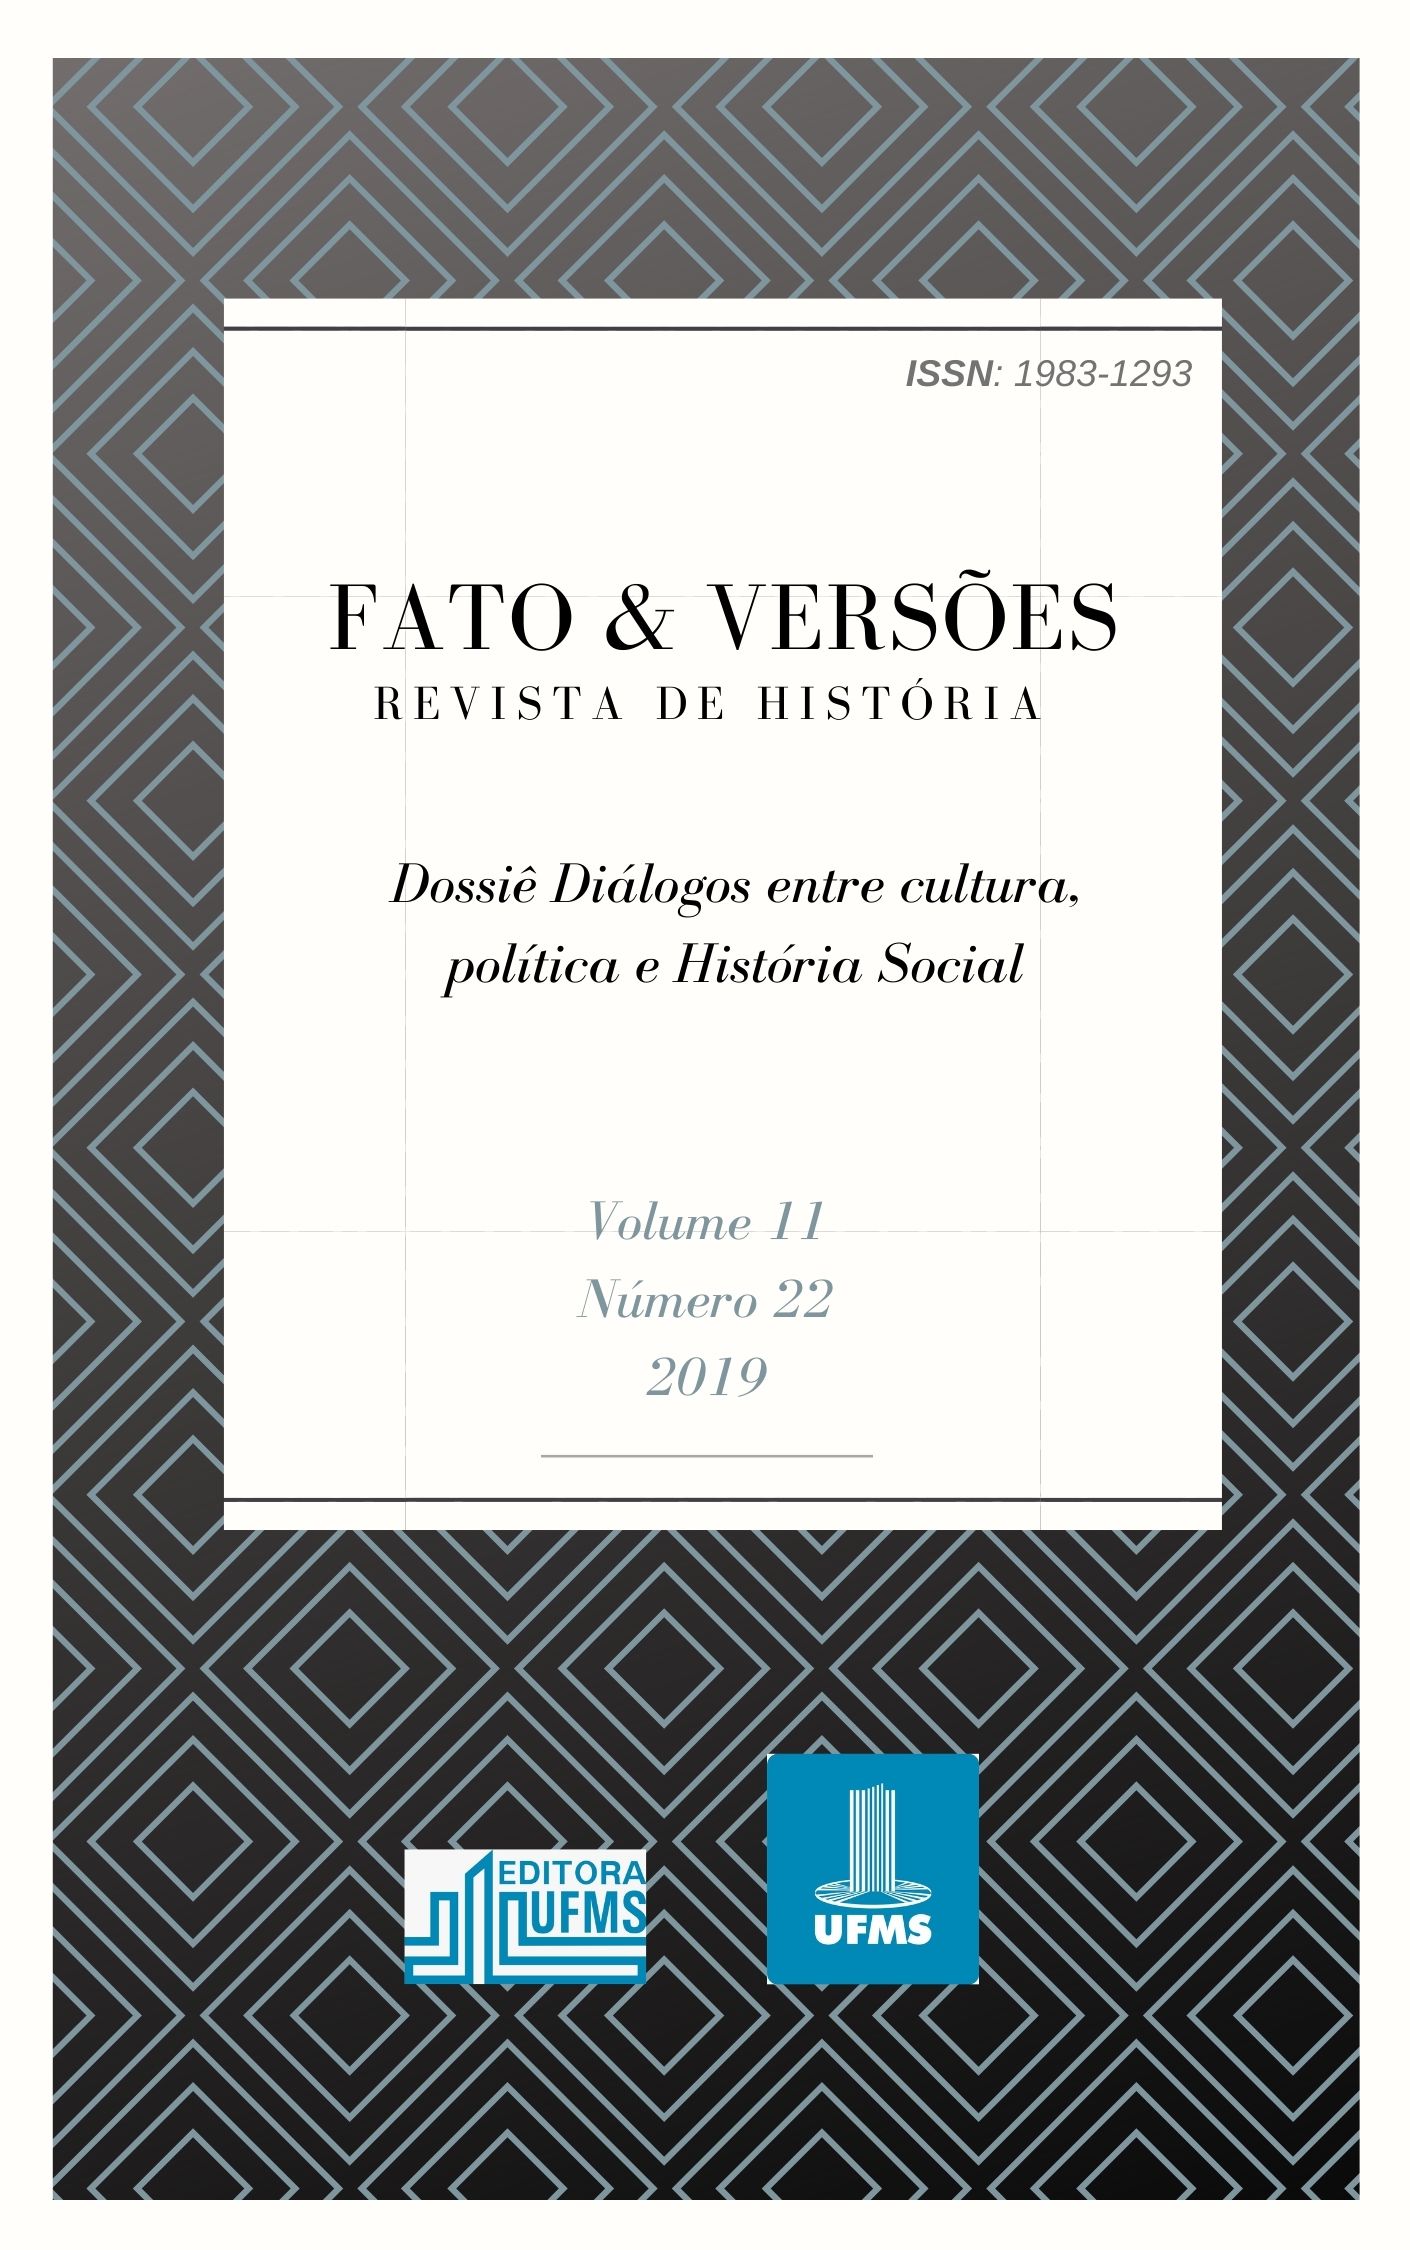 Volume 11, Número 22, 2019 - DOSSIÊ DIÁLOGOS ENTRE CULTURA, POLÍTICA E HISTÓRIA SOCIAL.